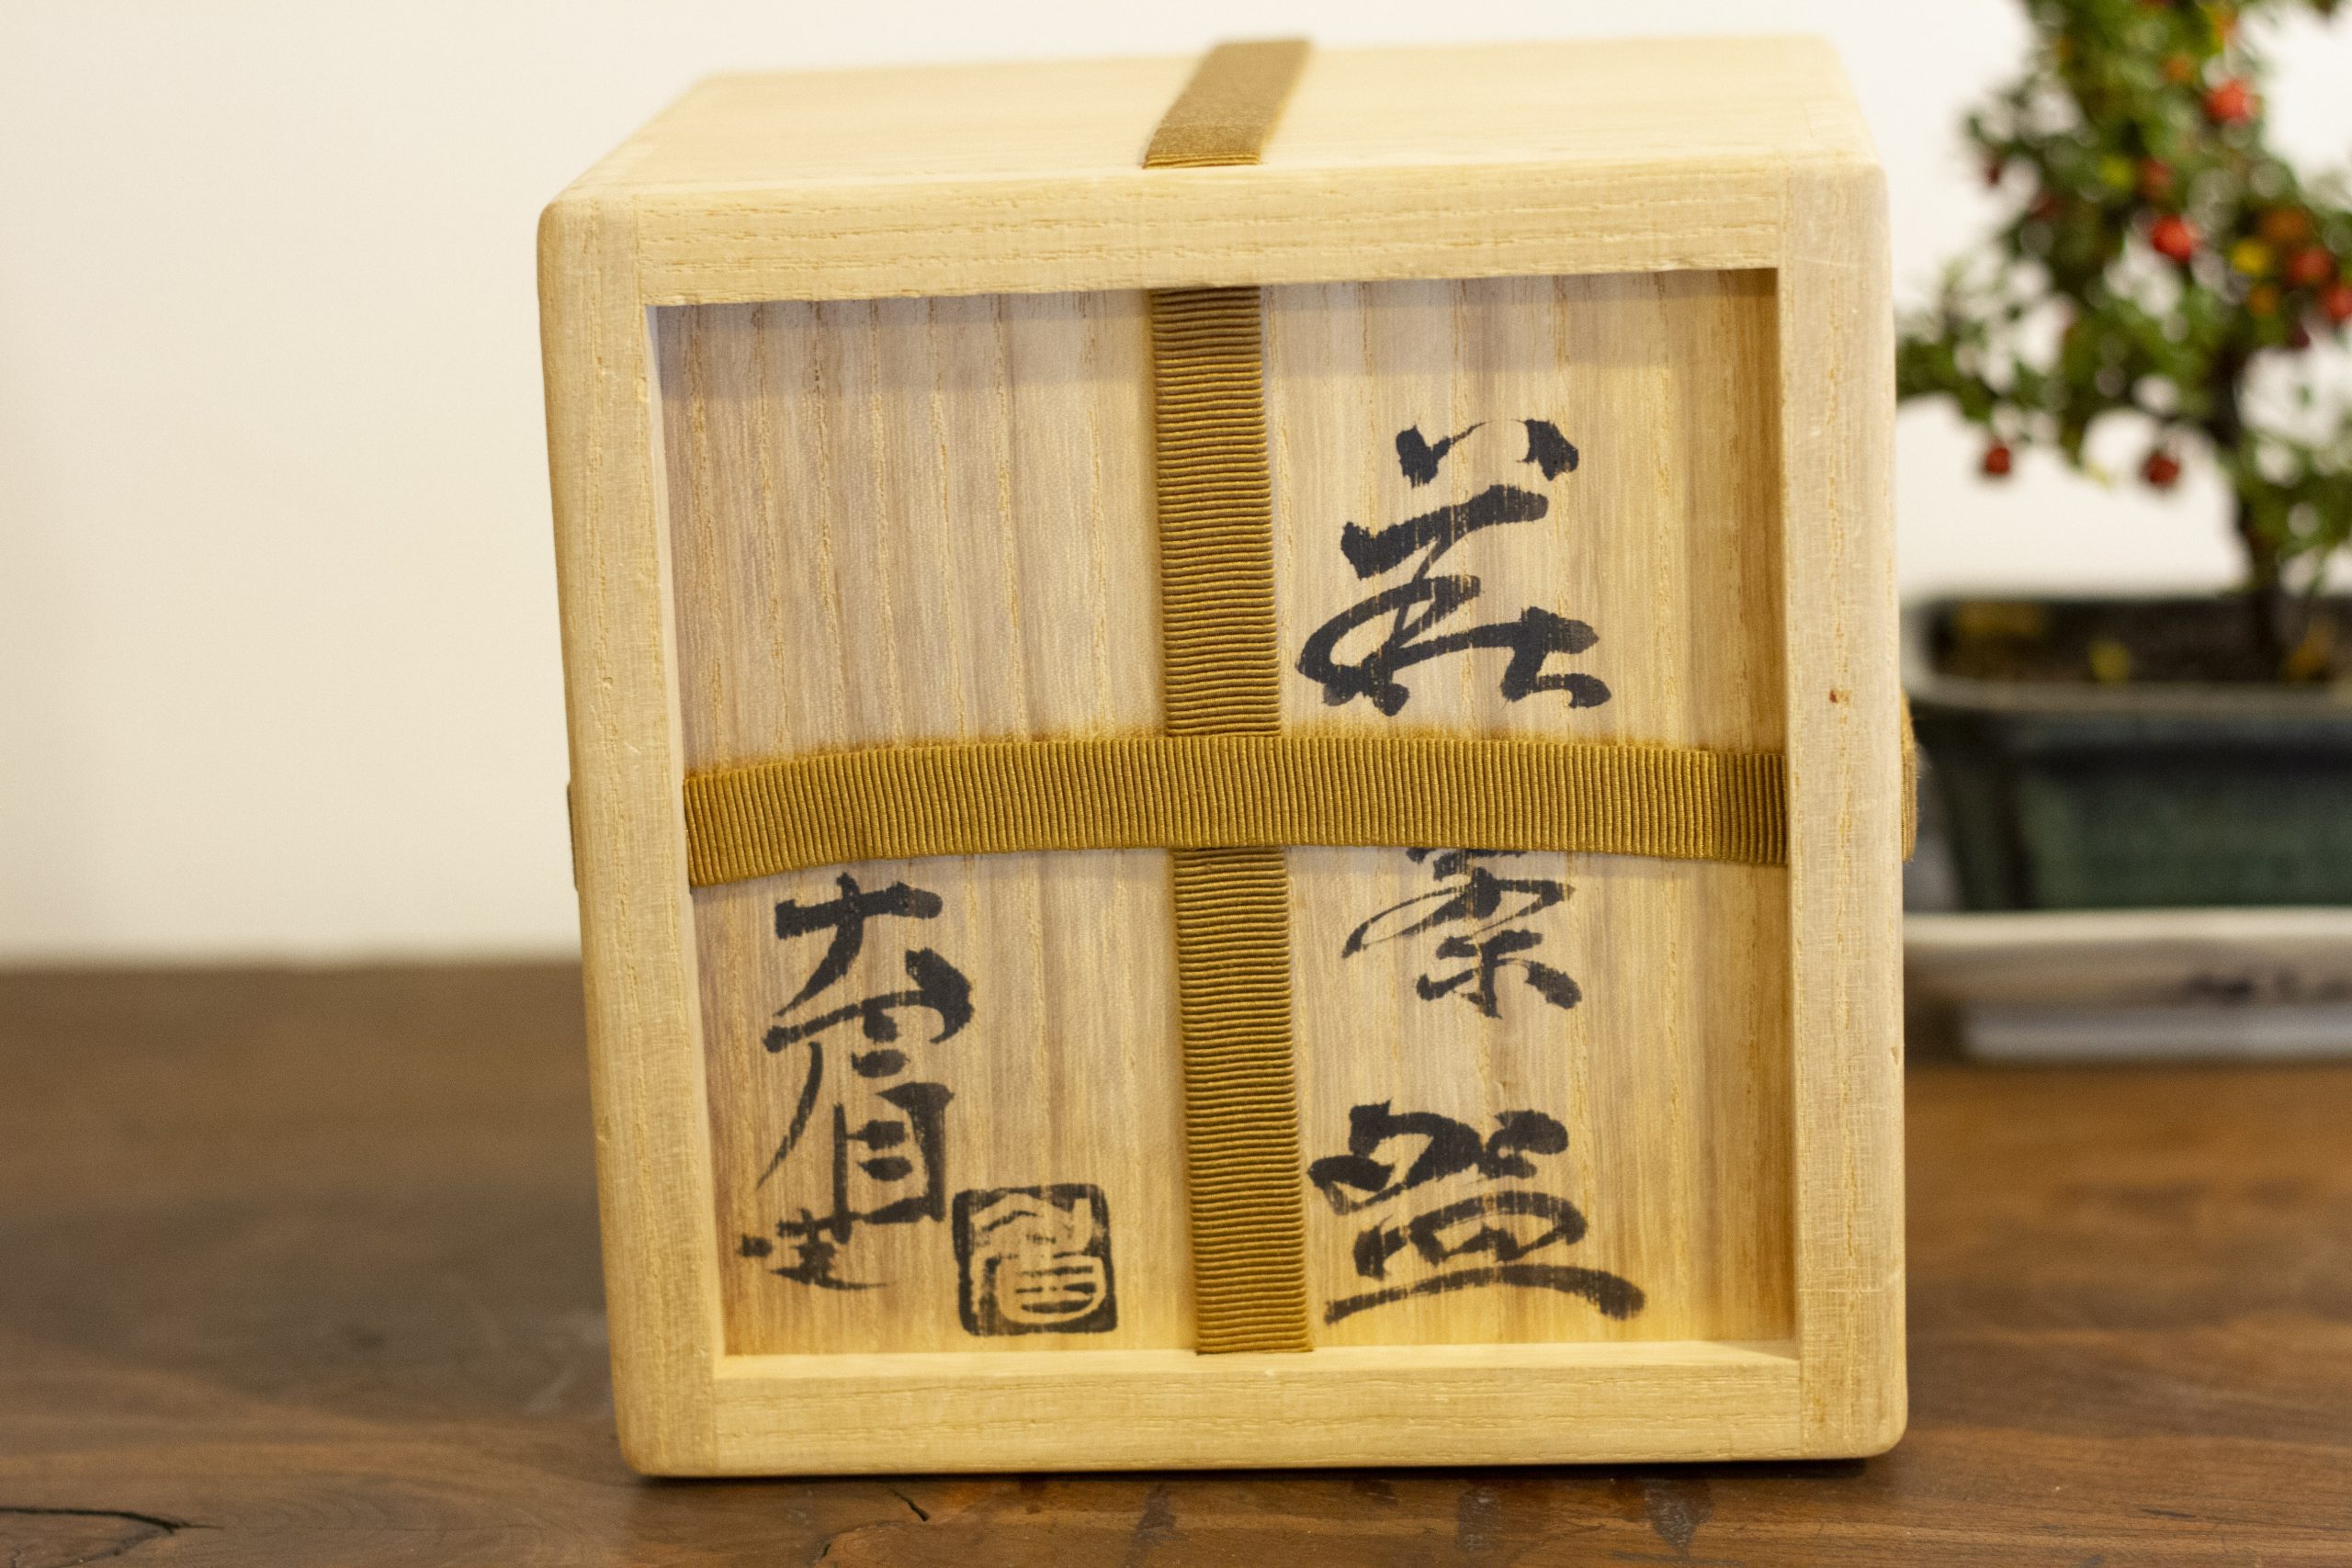 《販売》吉賀大眉作 -萩茶碗- - 京都 大徳寺近くお茶道具の買取・販売・体感「さわだ」